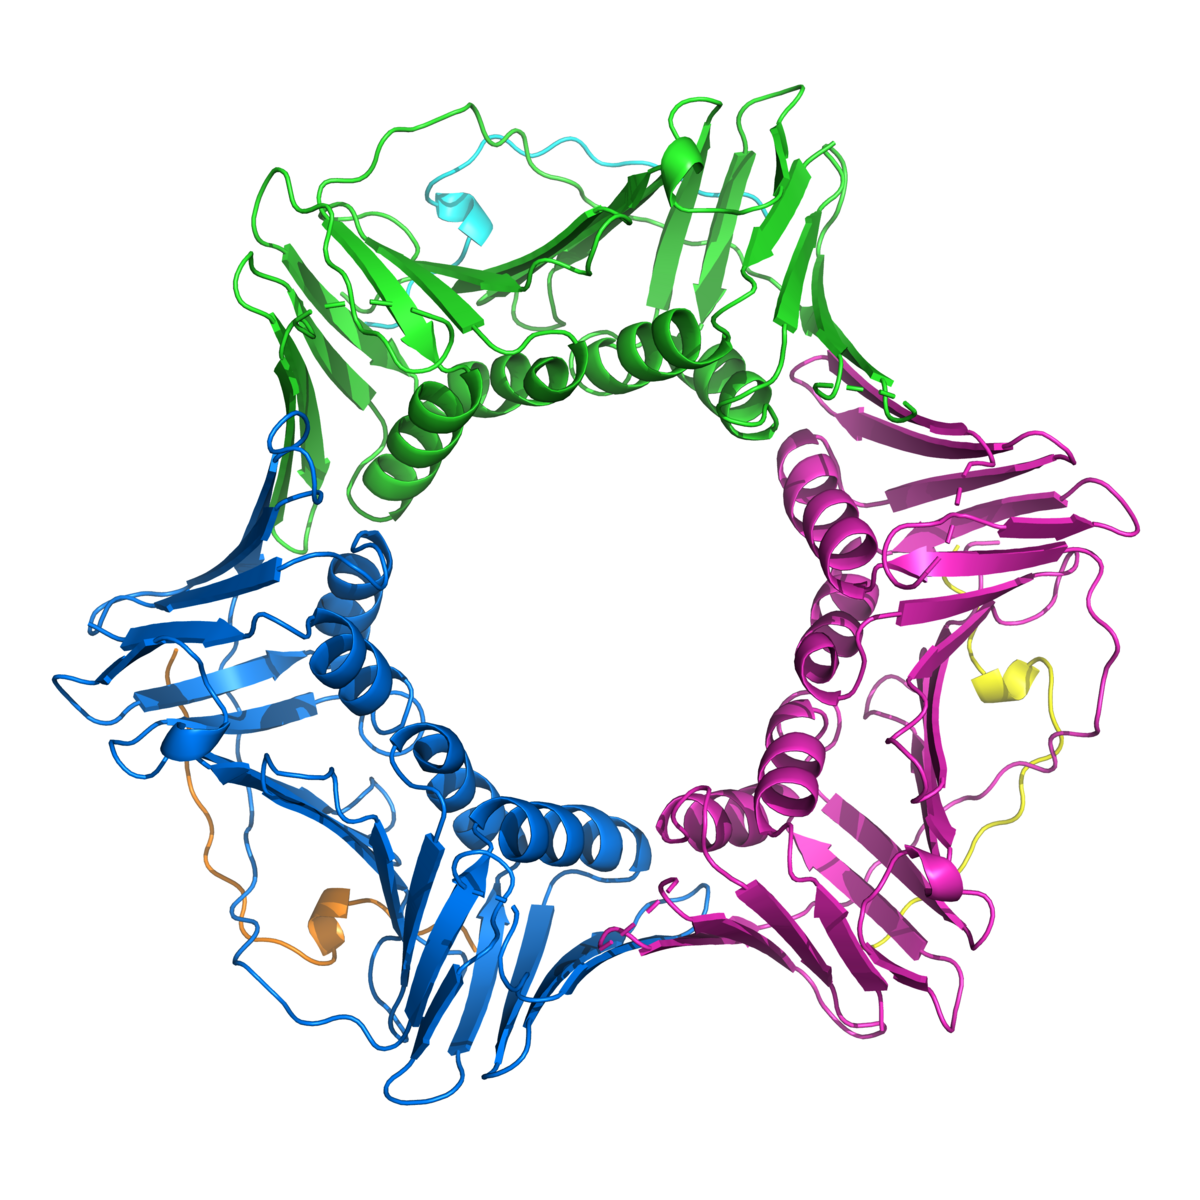 A PCNA é uma proteína em forma de estrela que ajuda a FAN1 a reparar o ADN  